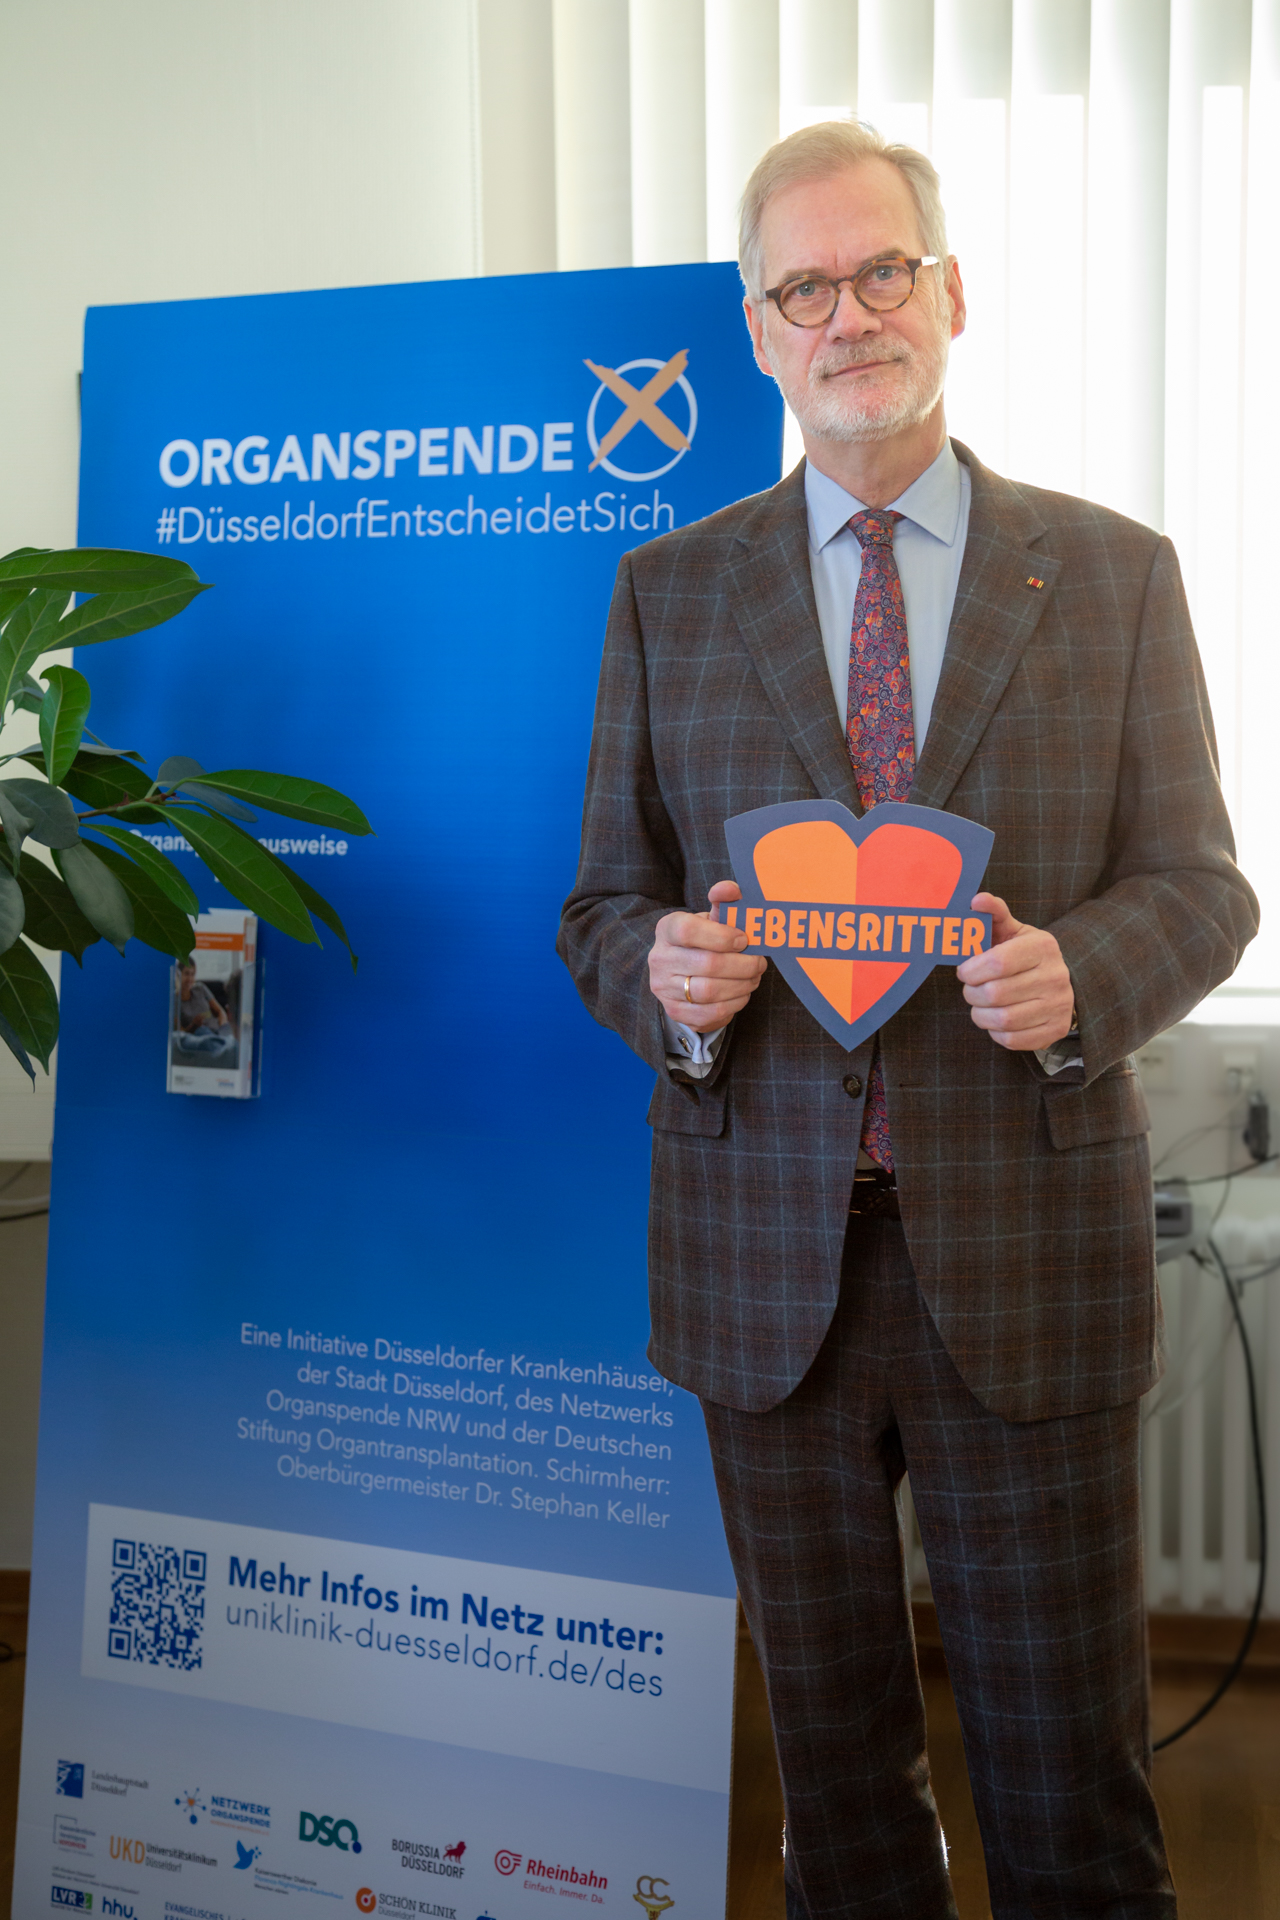 Prof. Dr. Dr. Frank Schneider, Vorstandsvorsitzender und Ärztlicher Direktor des Universitätsklinikums Düsseldorf